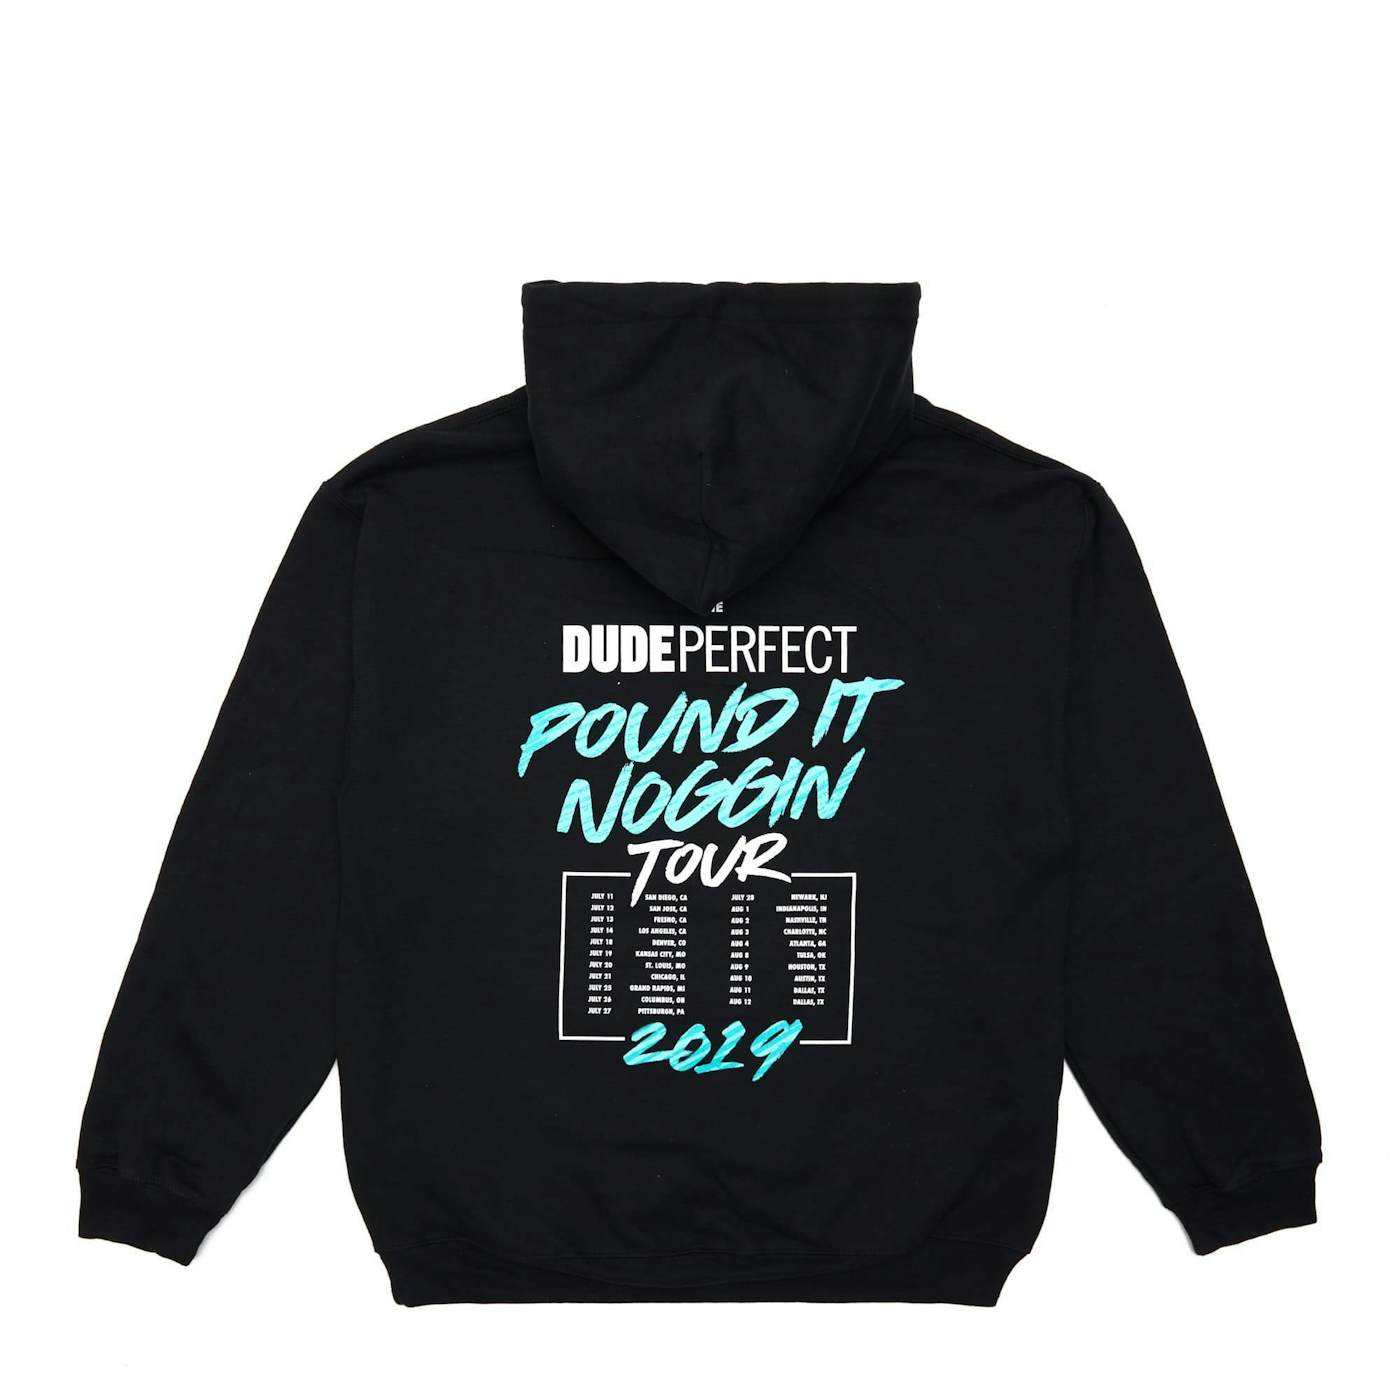 Dude Perfect Official Pound It Noggin Tour 2019 Hoodie w/ Tour Dates